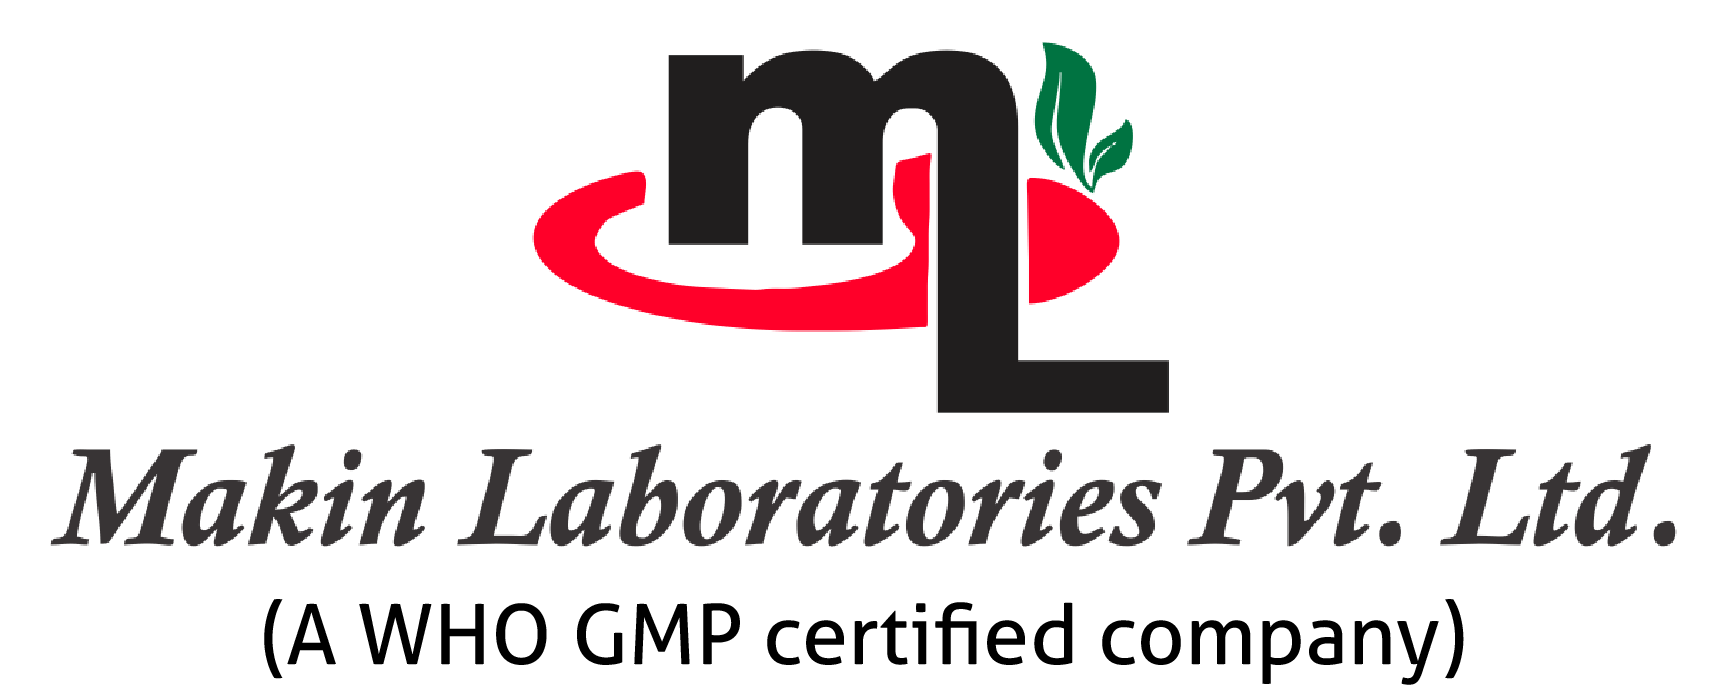 Website_Makin Laboratories-08-01